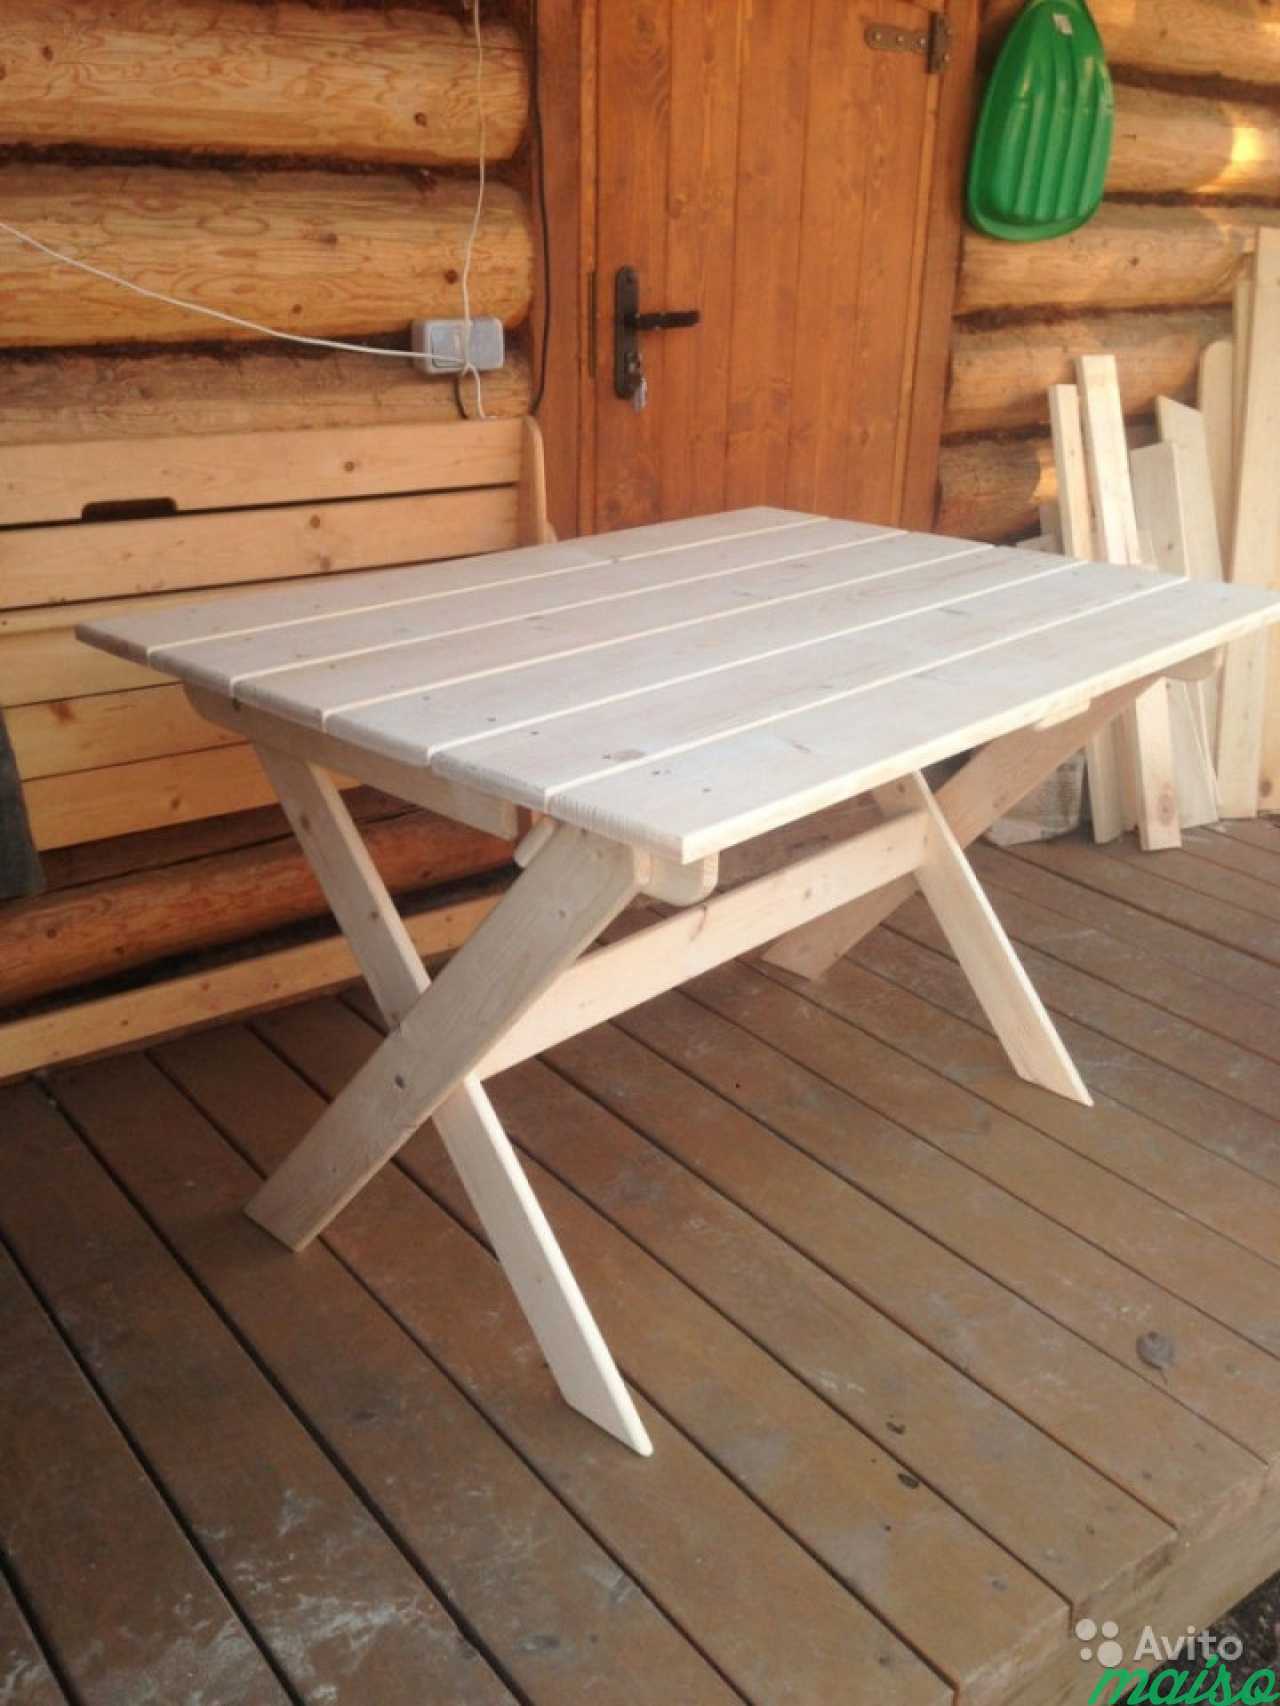 Сделать столик сам. Дачный столик. Стол садовый деревянный. Столик деревянный складной для дачи. Стол из досок.